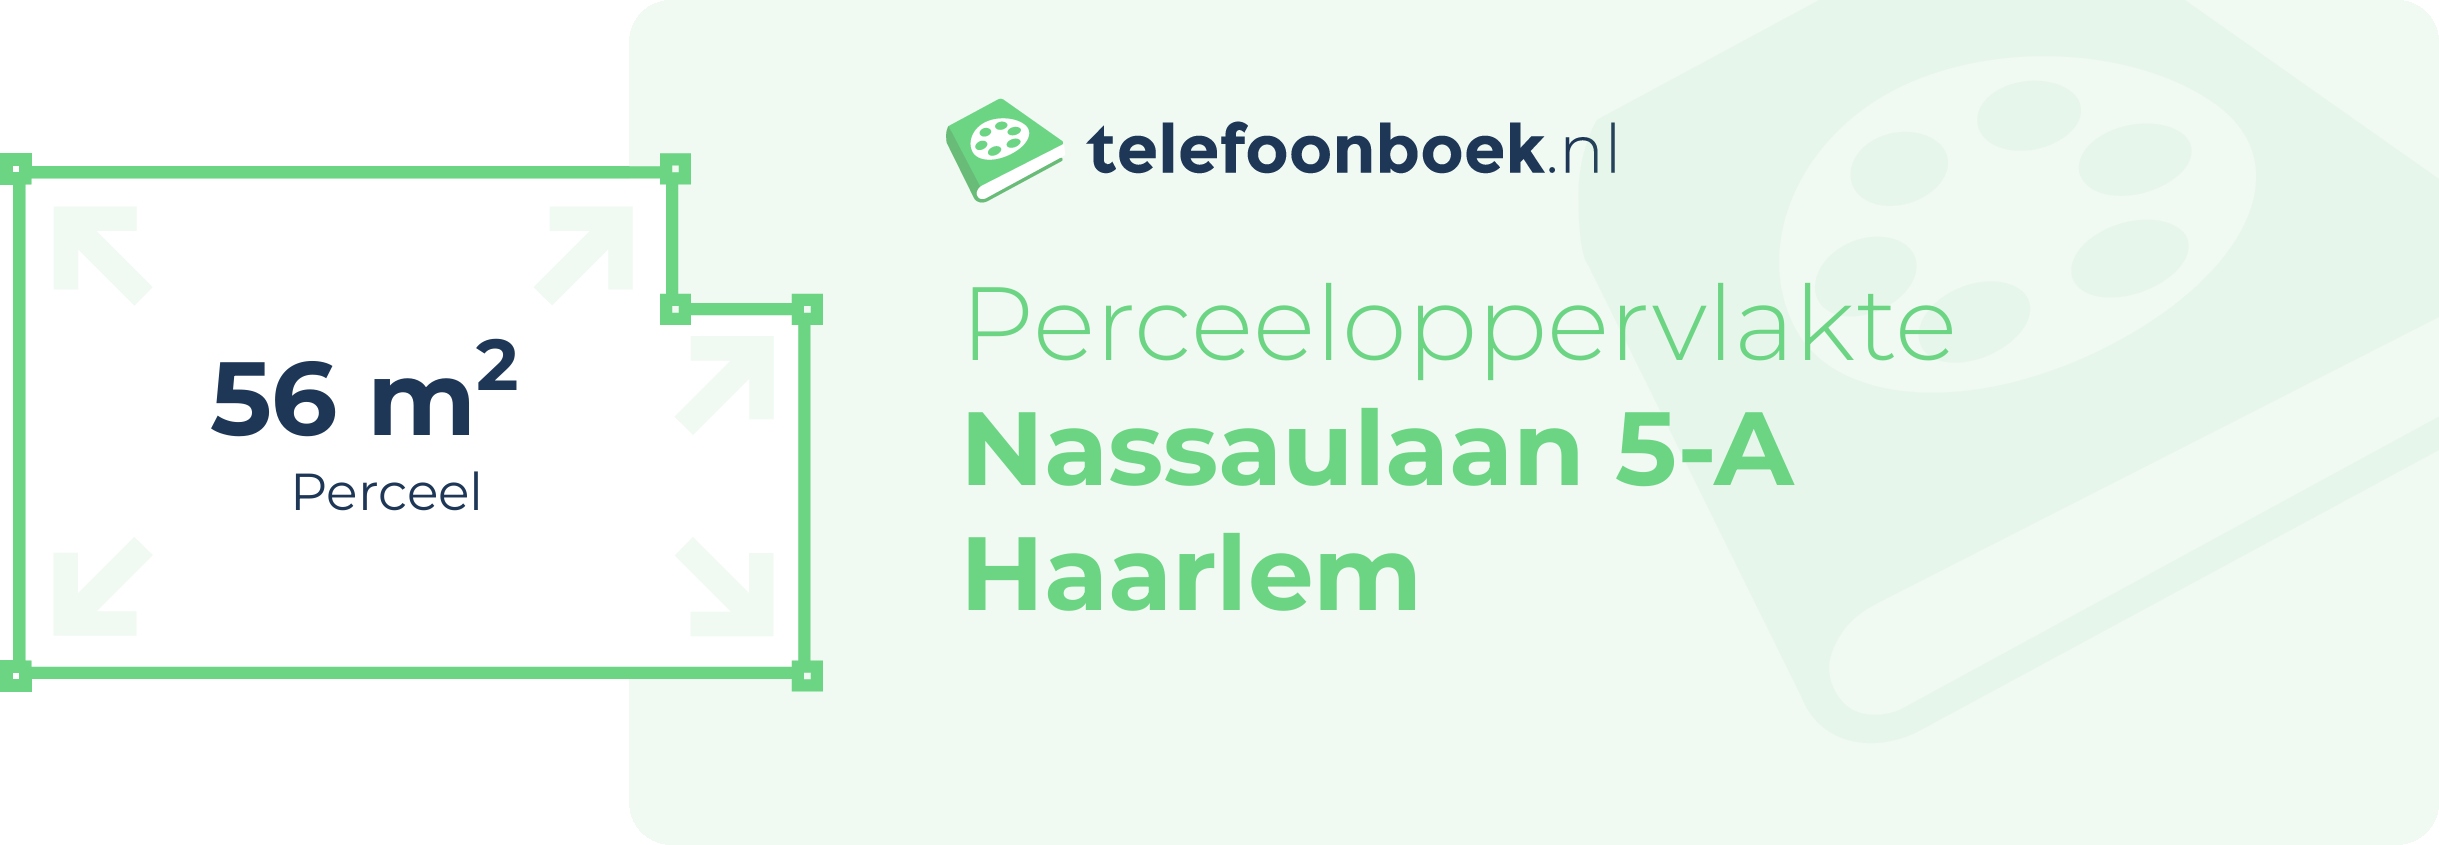 Perceeloppervlakte Nassaulaan 5-A Haarlem